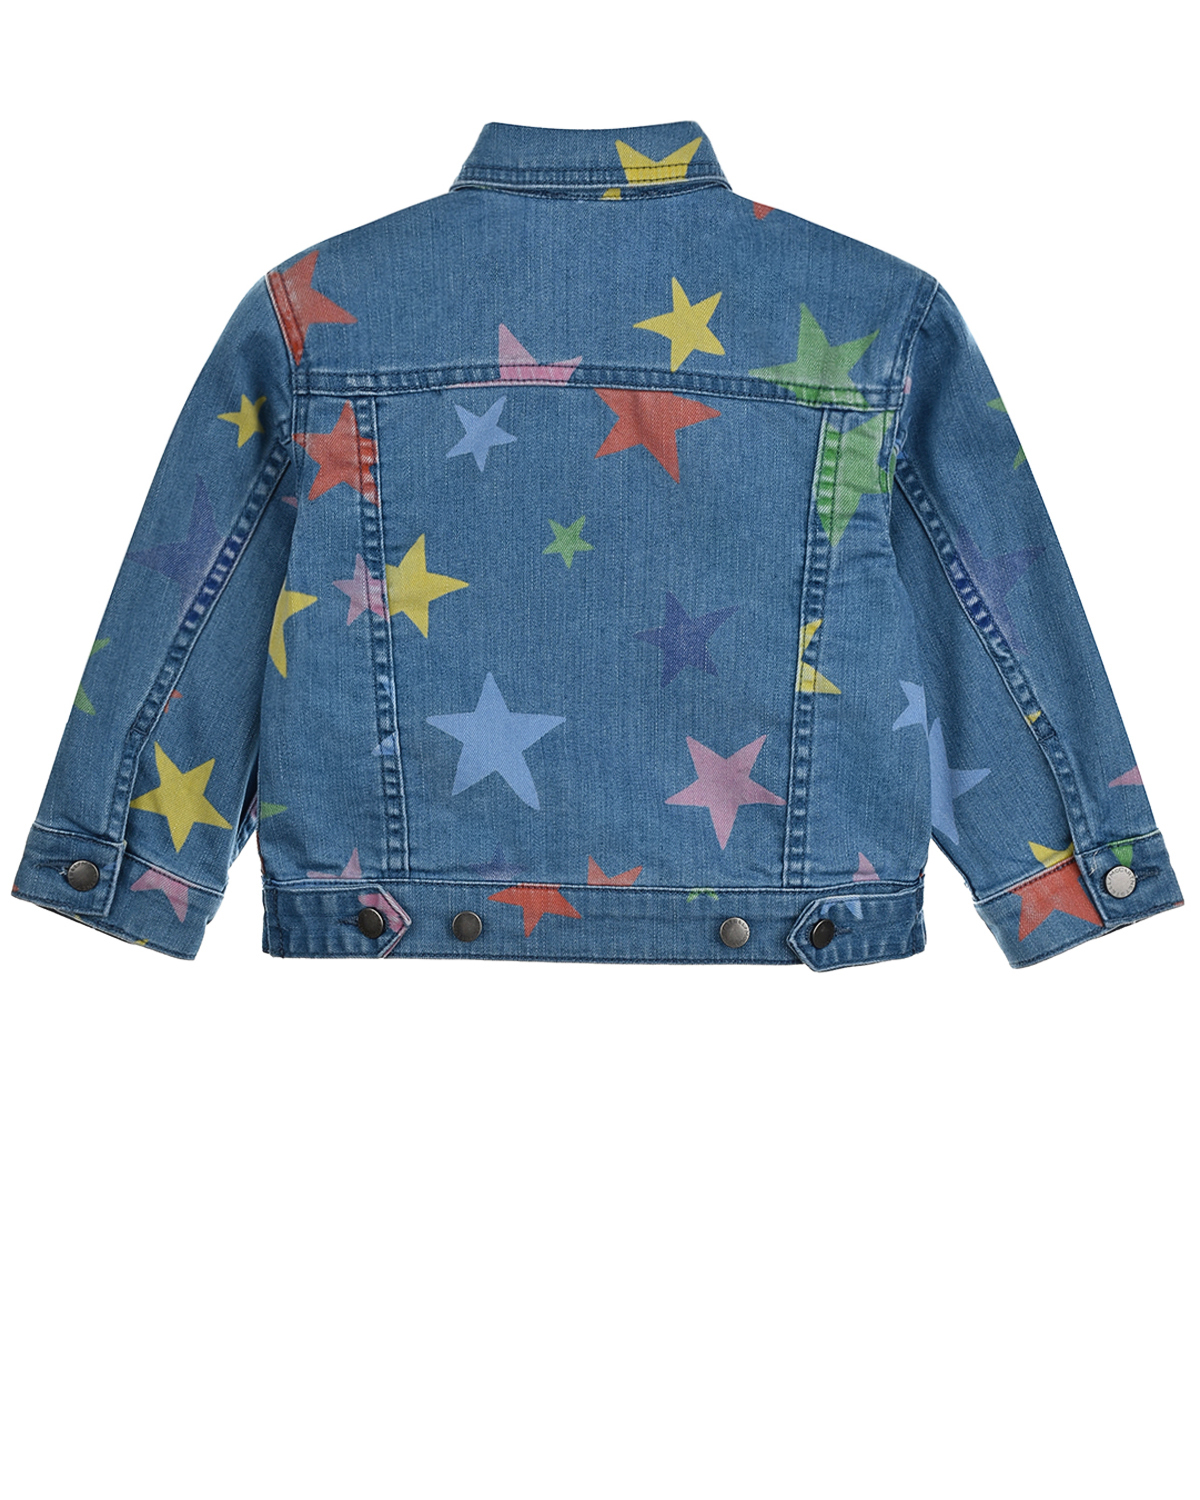 Джинсовая куртка с принтом "звезды" Stella McCartney детская, размер 98, цвет синий - фото 3